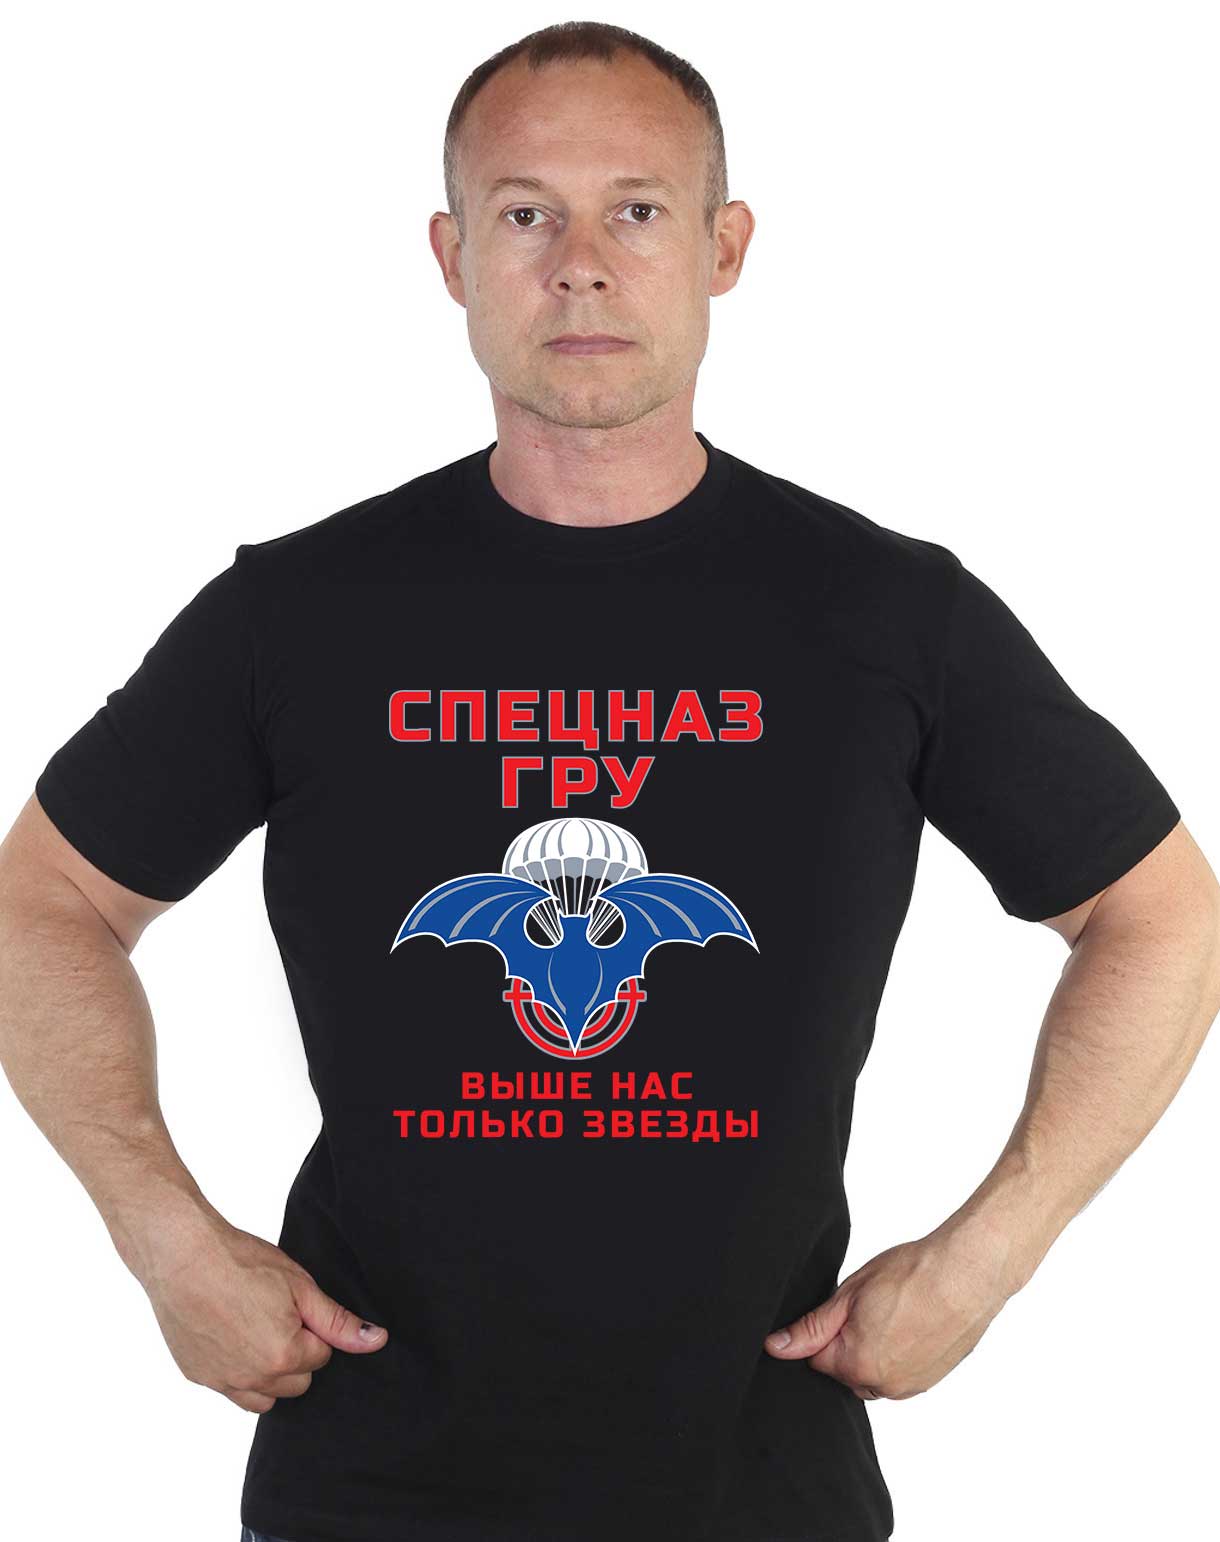 Заказать футболки с эмблемой Войск Спецназа ГРУ 